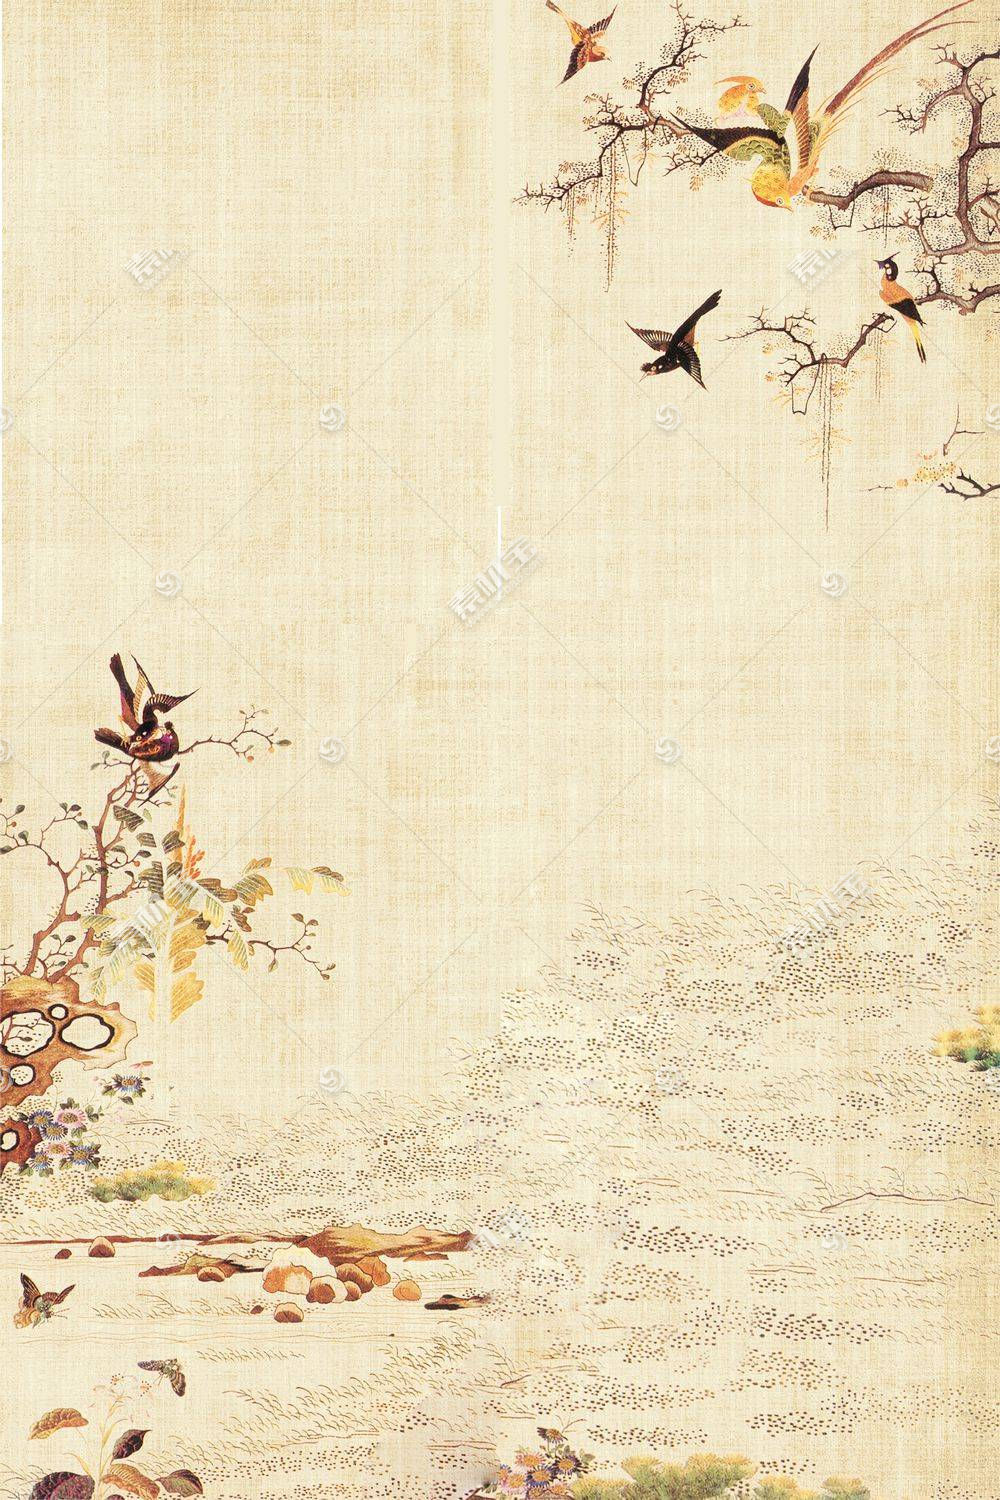 复古中国风工笔画背景素材模板下载 图片id 书画文字 文化艺术 Psd素材 素材宝scbao Com